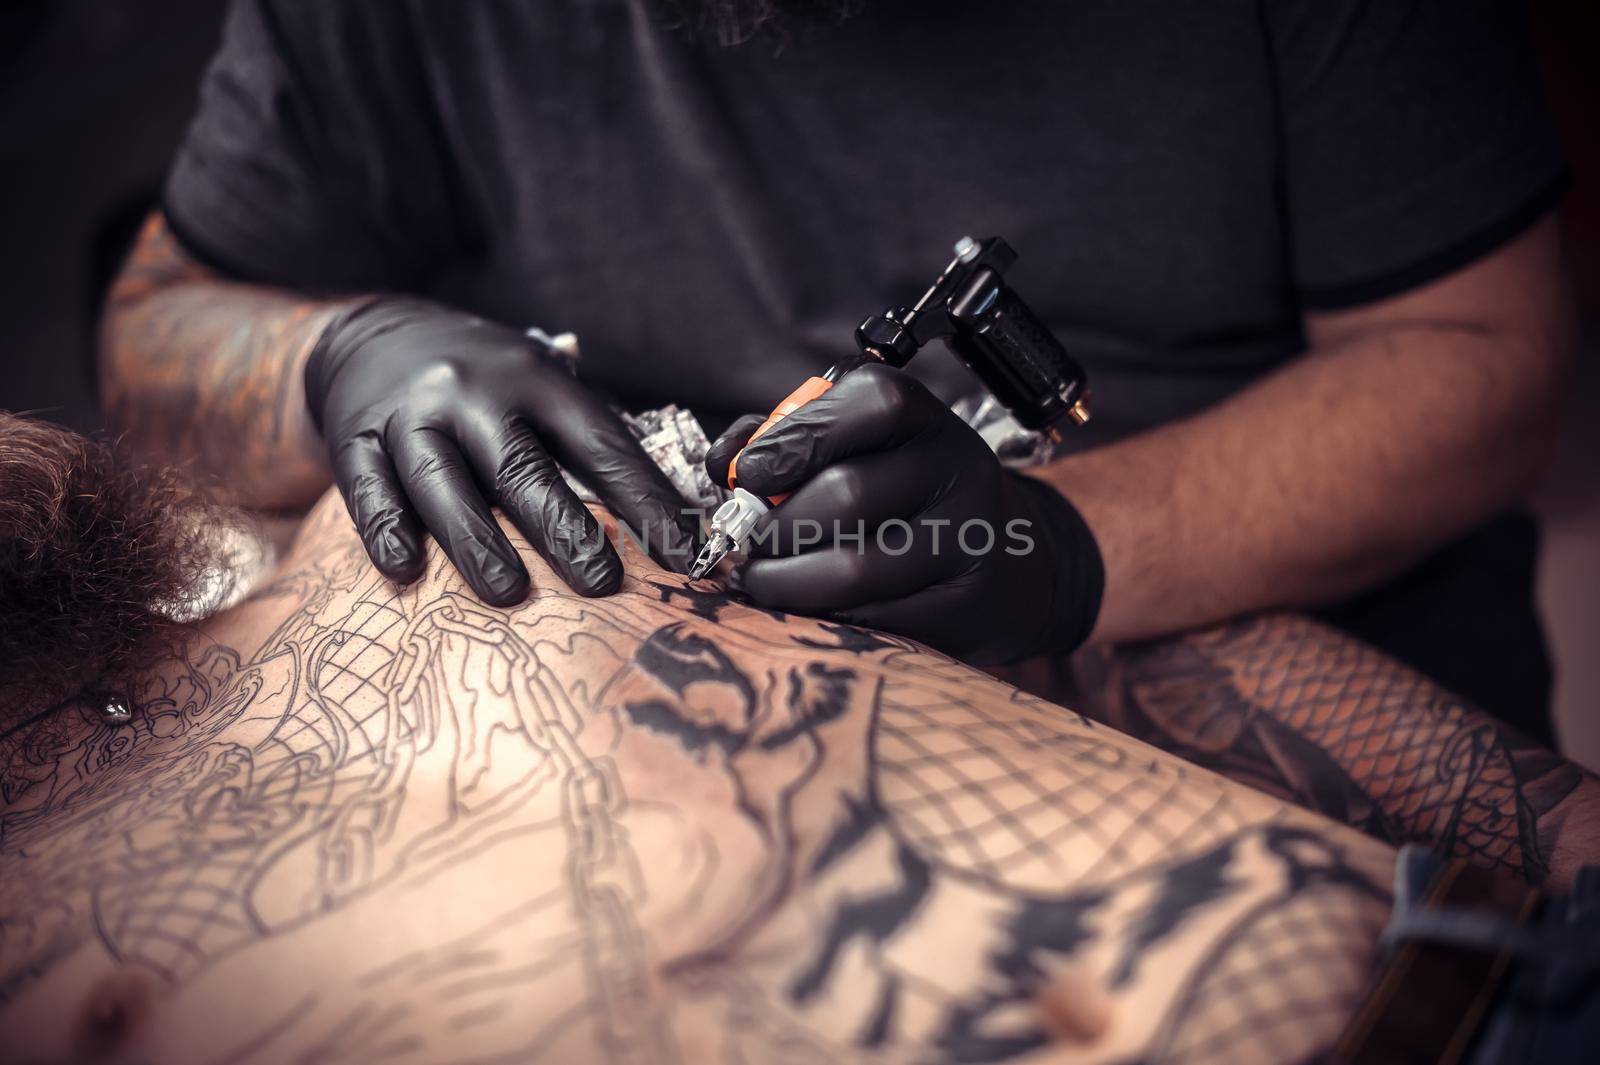 Professional tattooist at work in tattoo studio./Tattoo artist showing process of making a tattoo in a workshop studio.